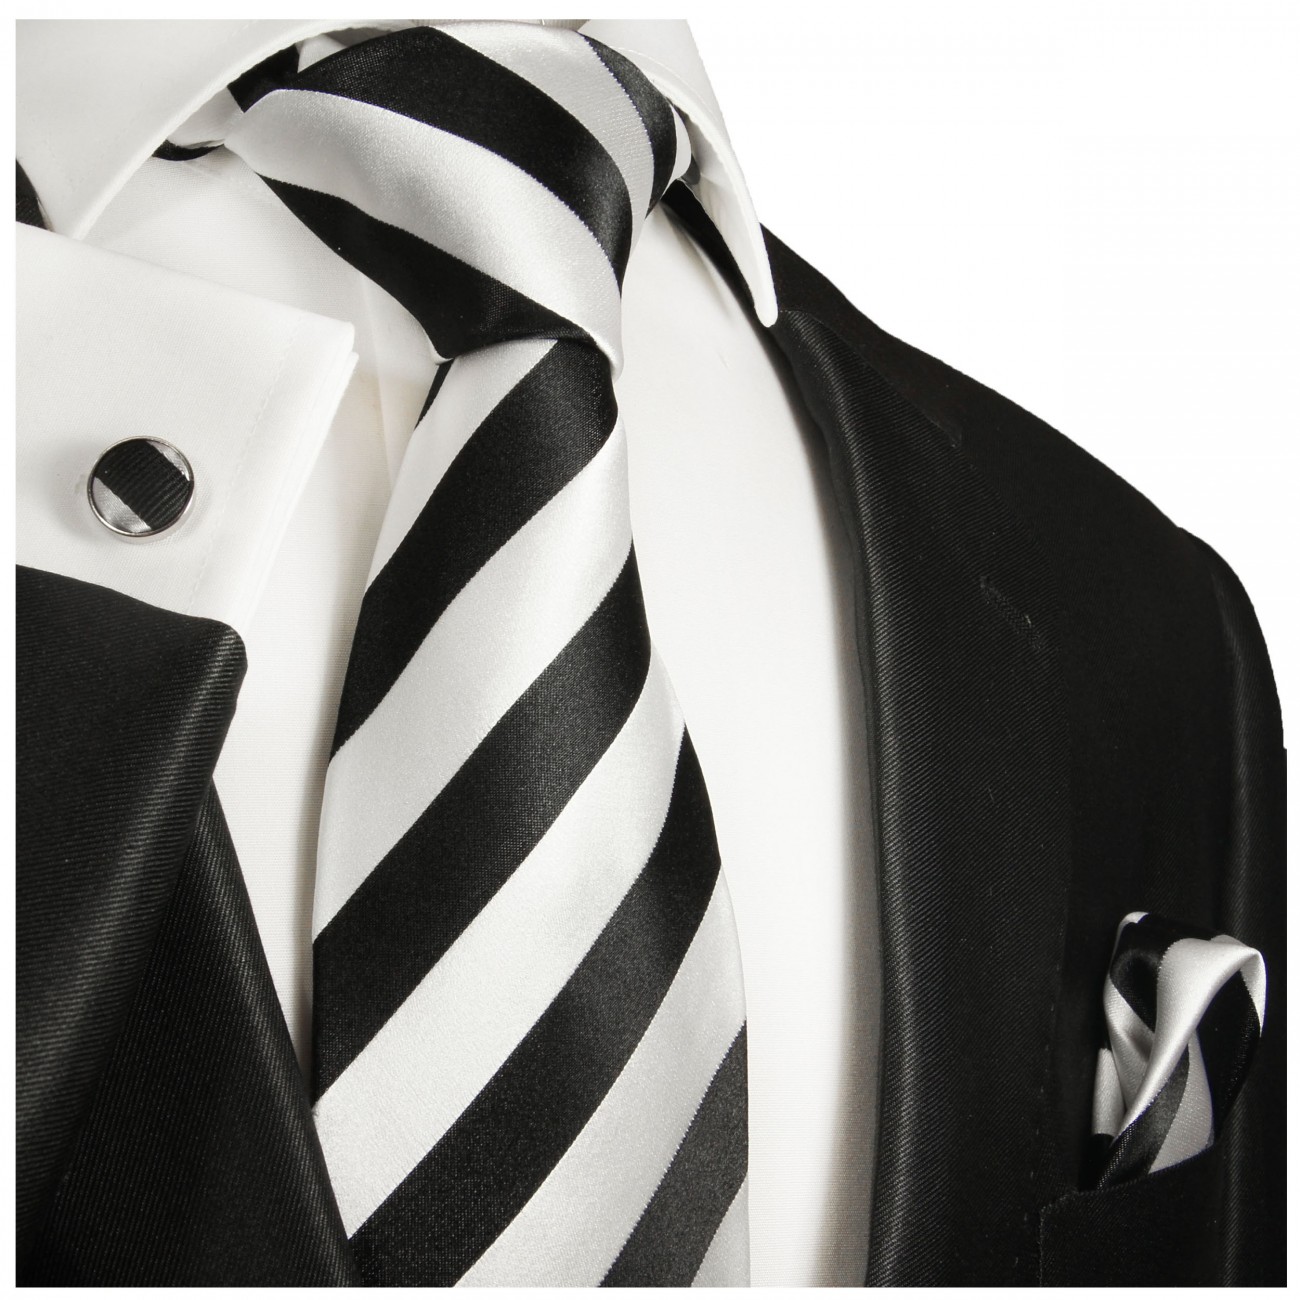 Krawatte schwarz weiß gestreift Seide mit Einstecktuch und Manschettenknöpfe